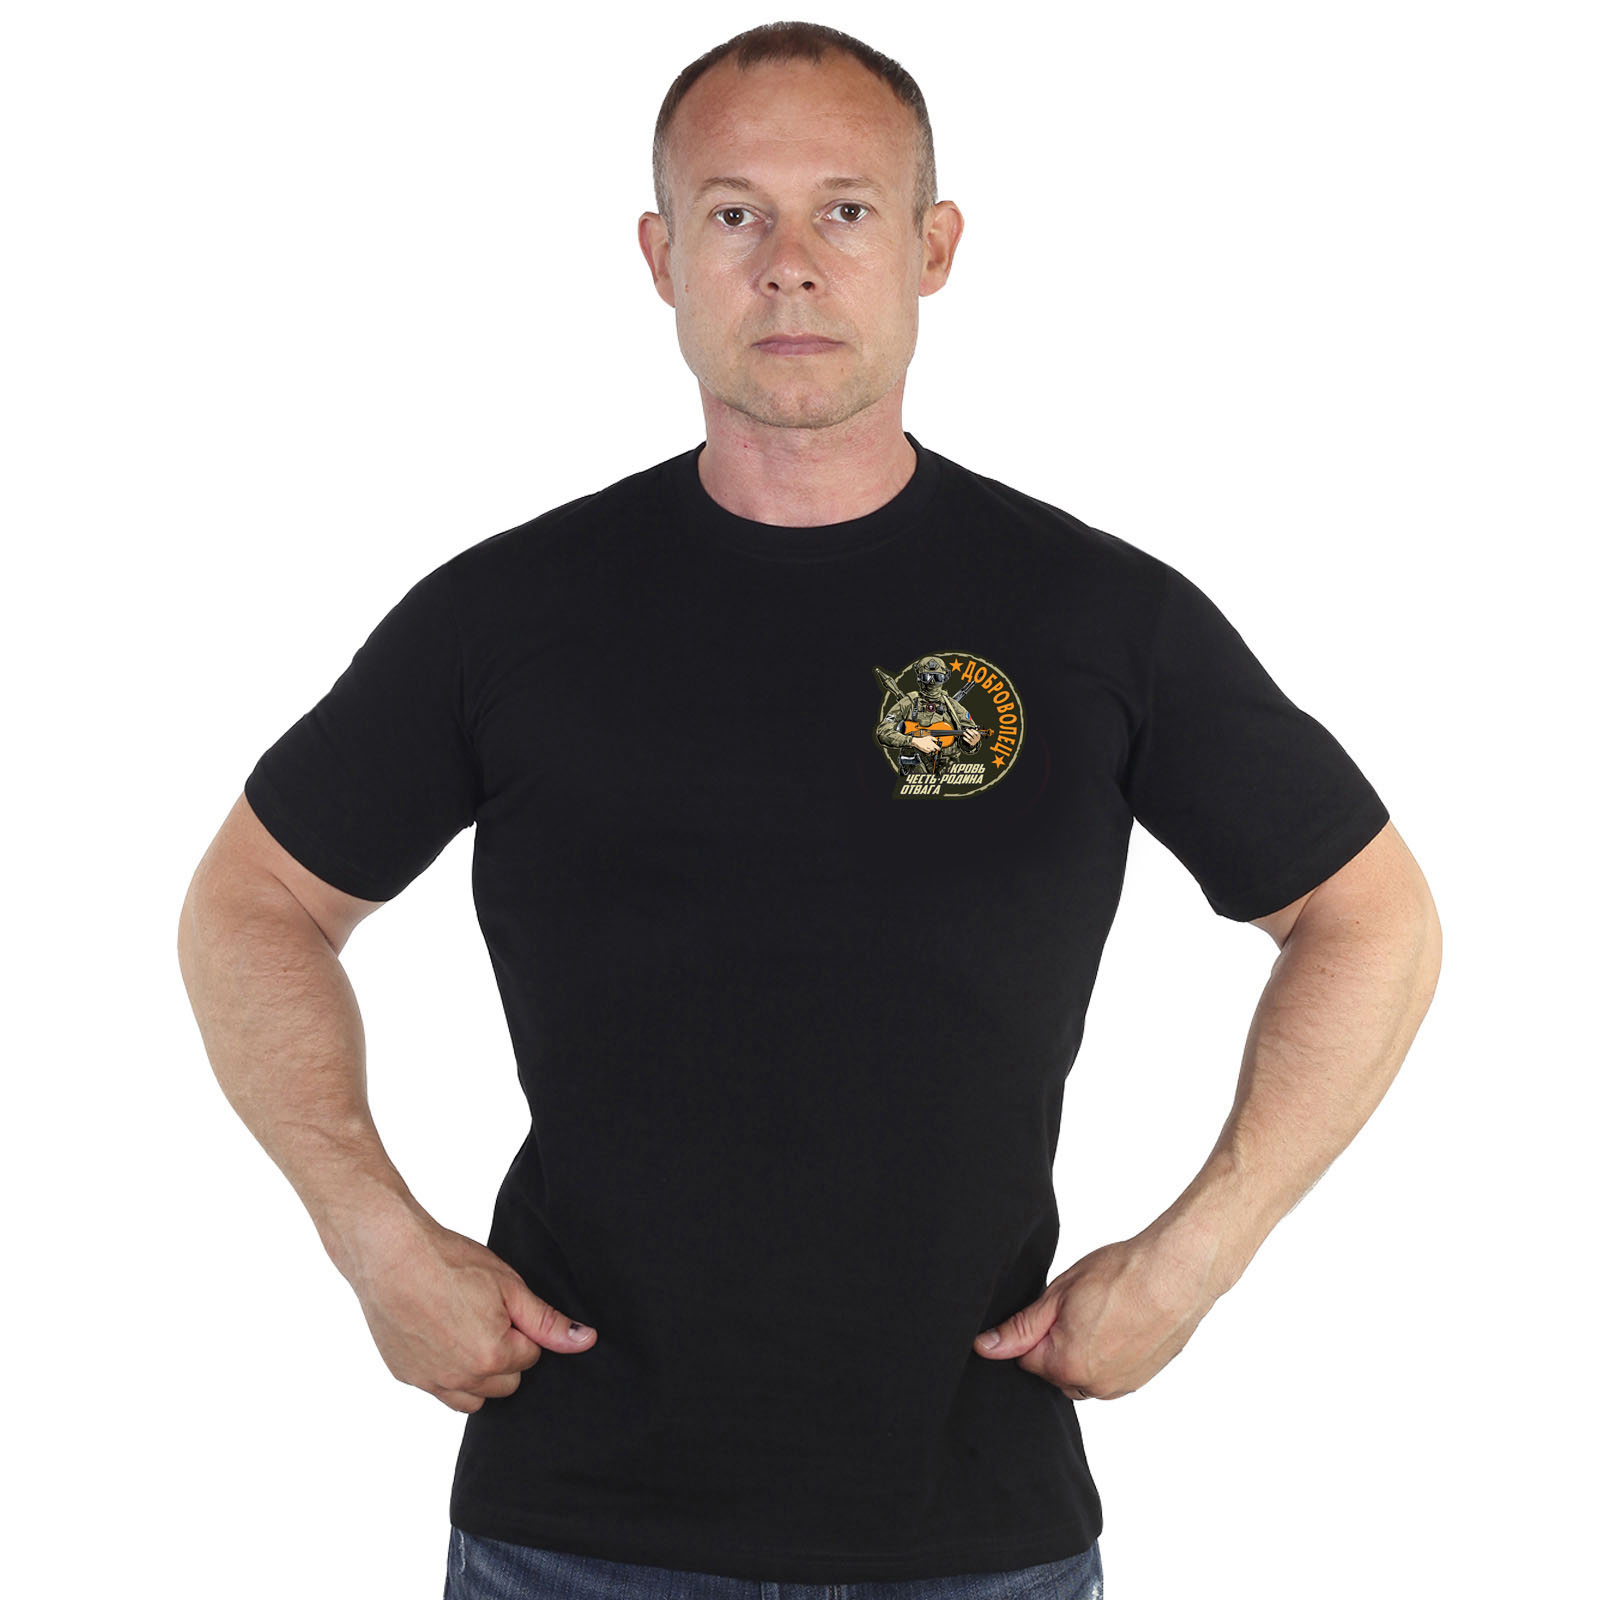 Купить мужскую черную футболку с термотрансфером Доброволец выгодно